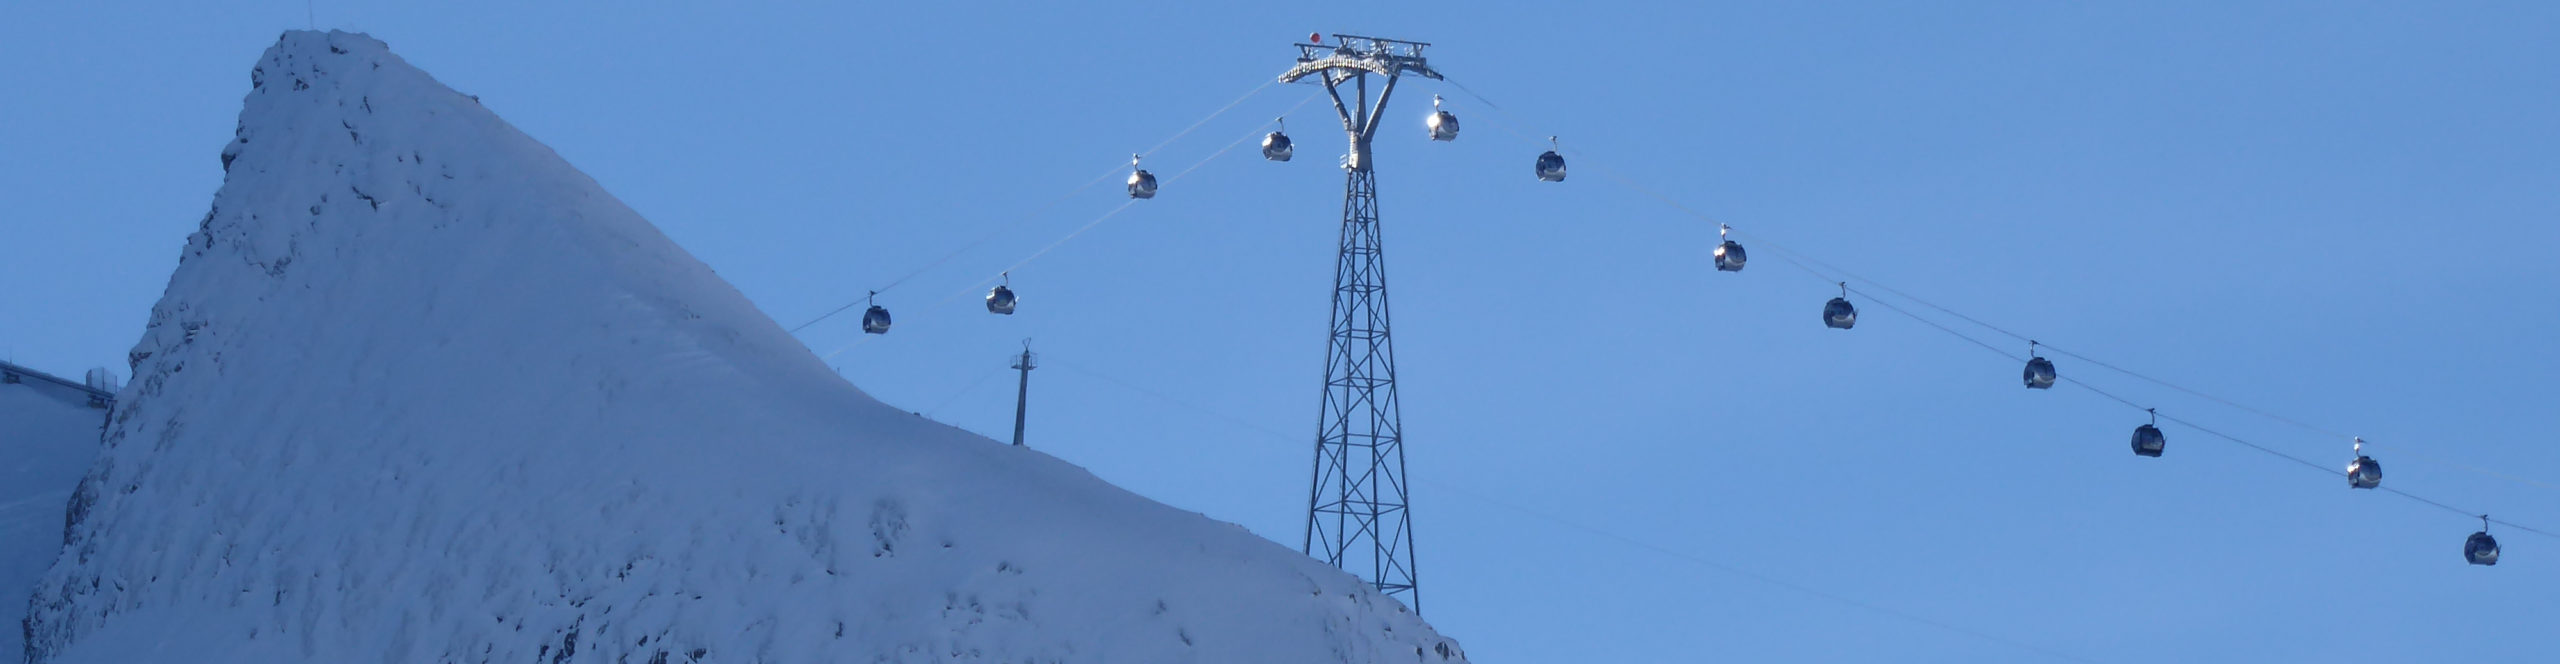 ZELL AM SEE – Kitzsteinhorn – Saalbach – verlängertes Skiwochenende in drei Skigebiete – 3 Skitage ab Donnerstag nachmittag 